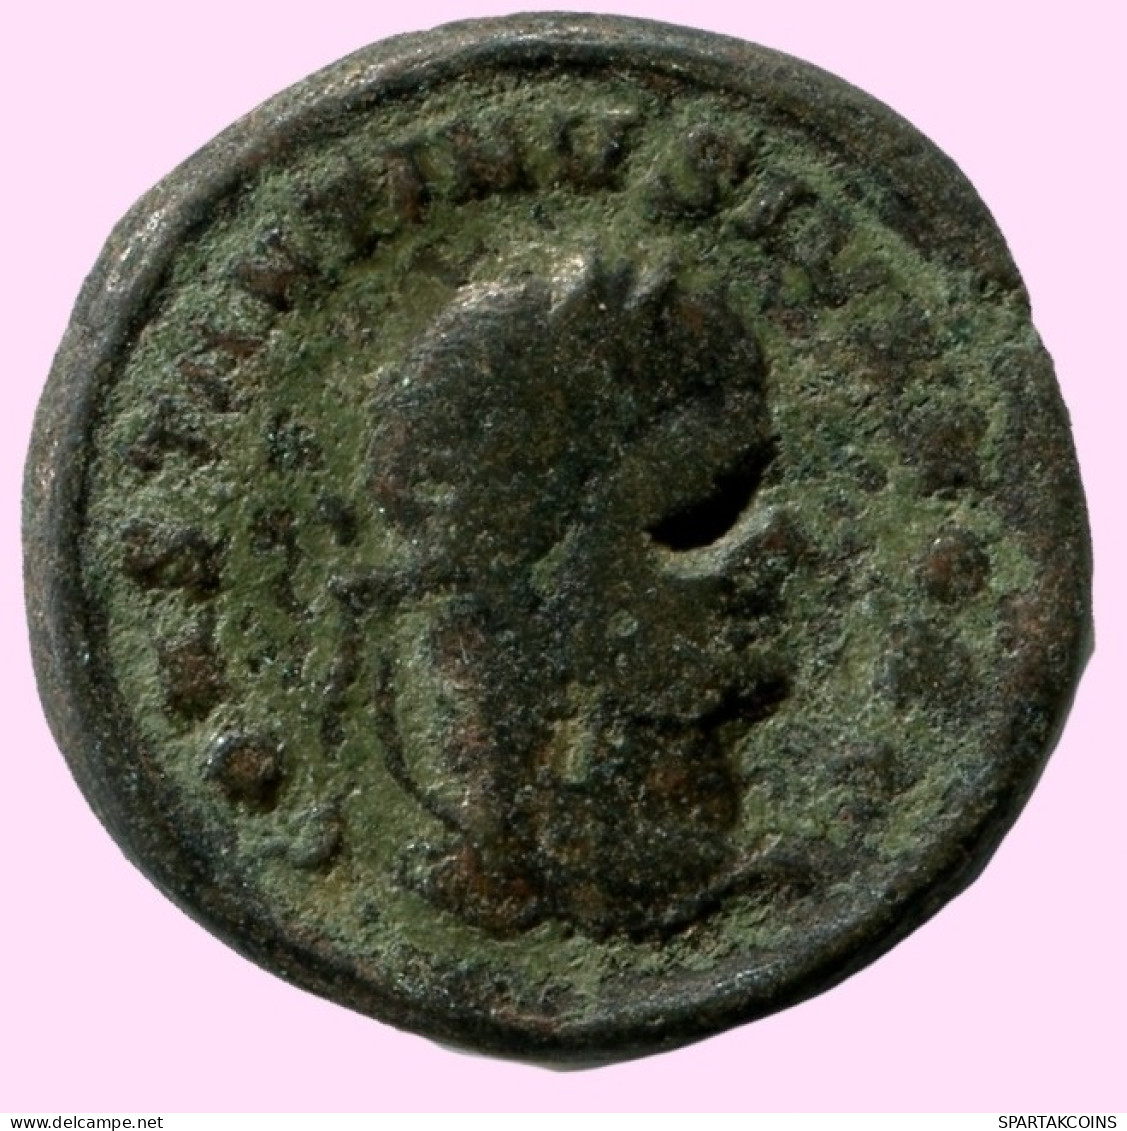 CONSTANTINE I Authentische Antike RÖMISCHEN KAISERZEIT Münze #ANC12234.12.D.A - Der Christlischen Kaiser (307 / 363)